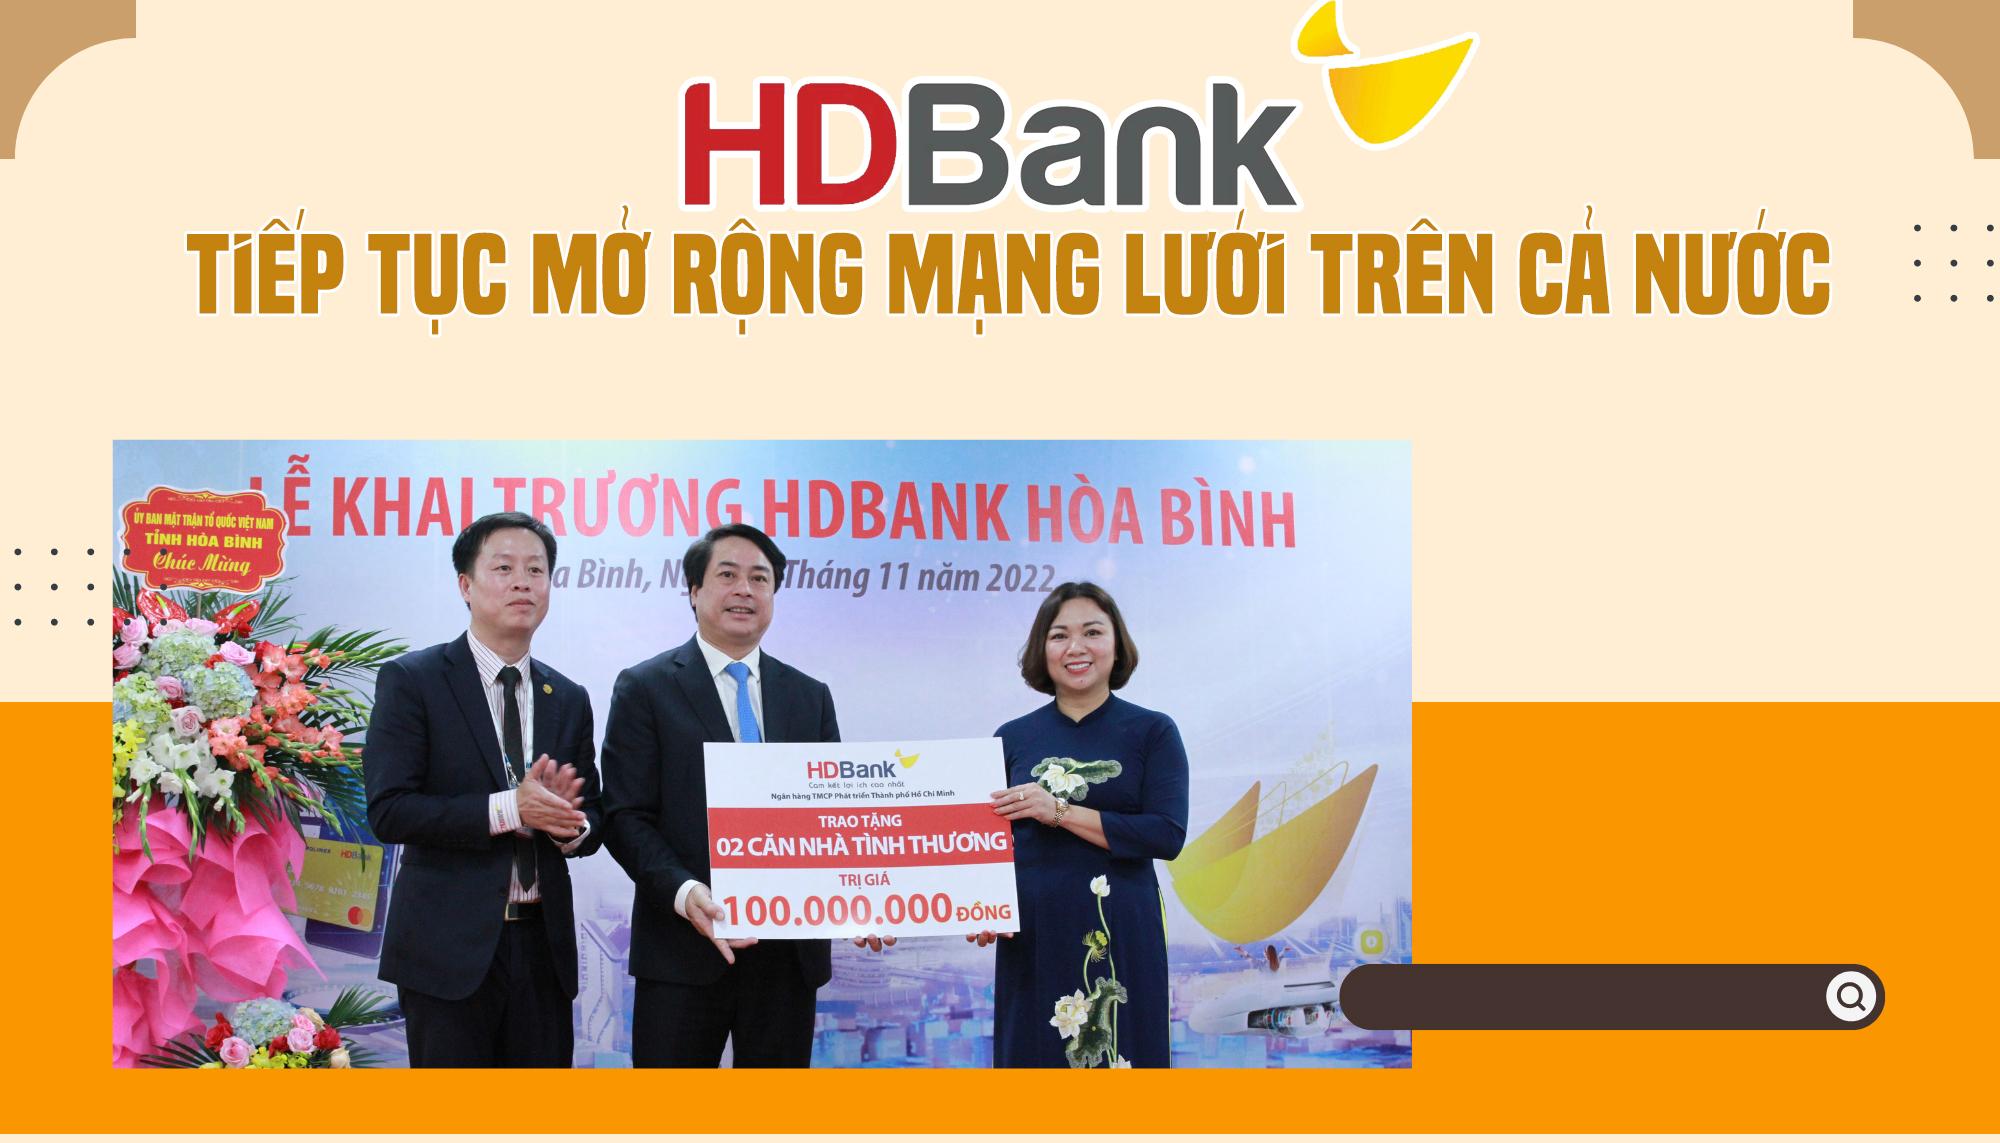 Tiếp tục mở rộng mạng lưới trên cả nước, HDBank phục vụ thêm hàng triệu khách hàng